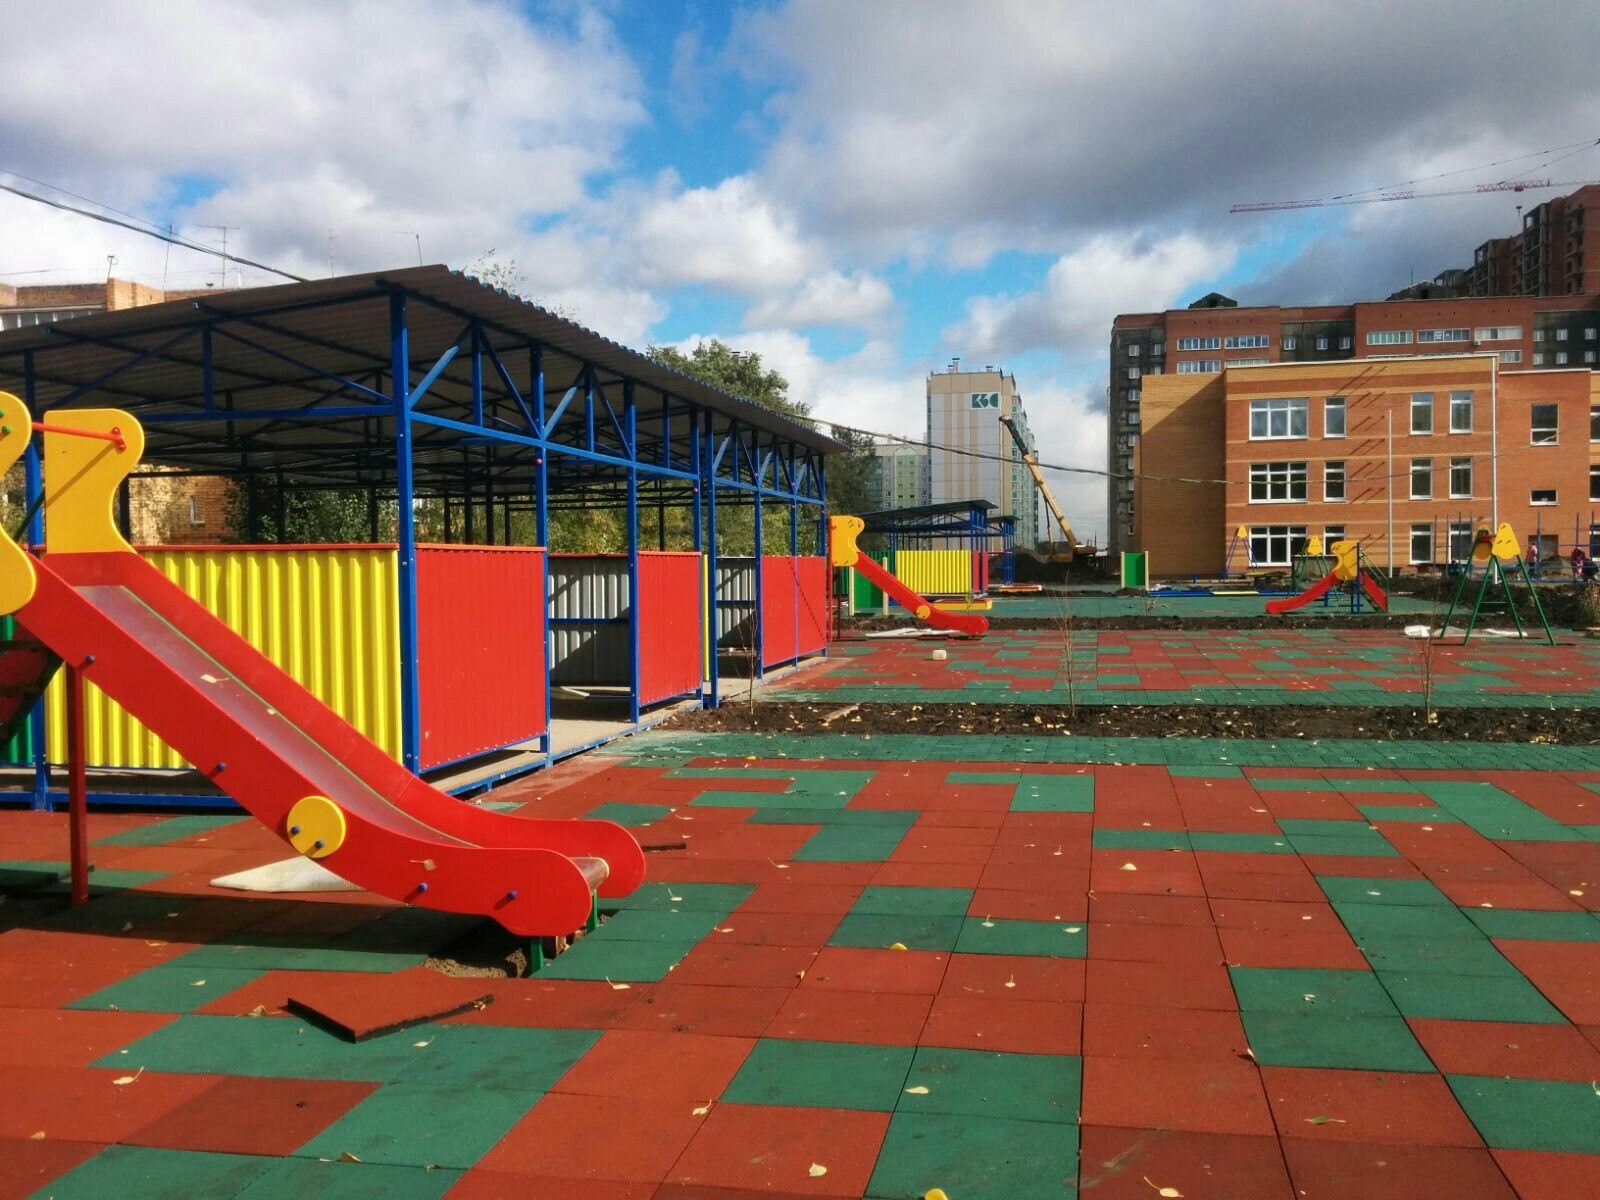 Детская площадка: как построить игровой уголок на даче своими руками